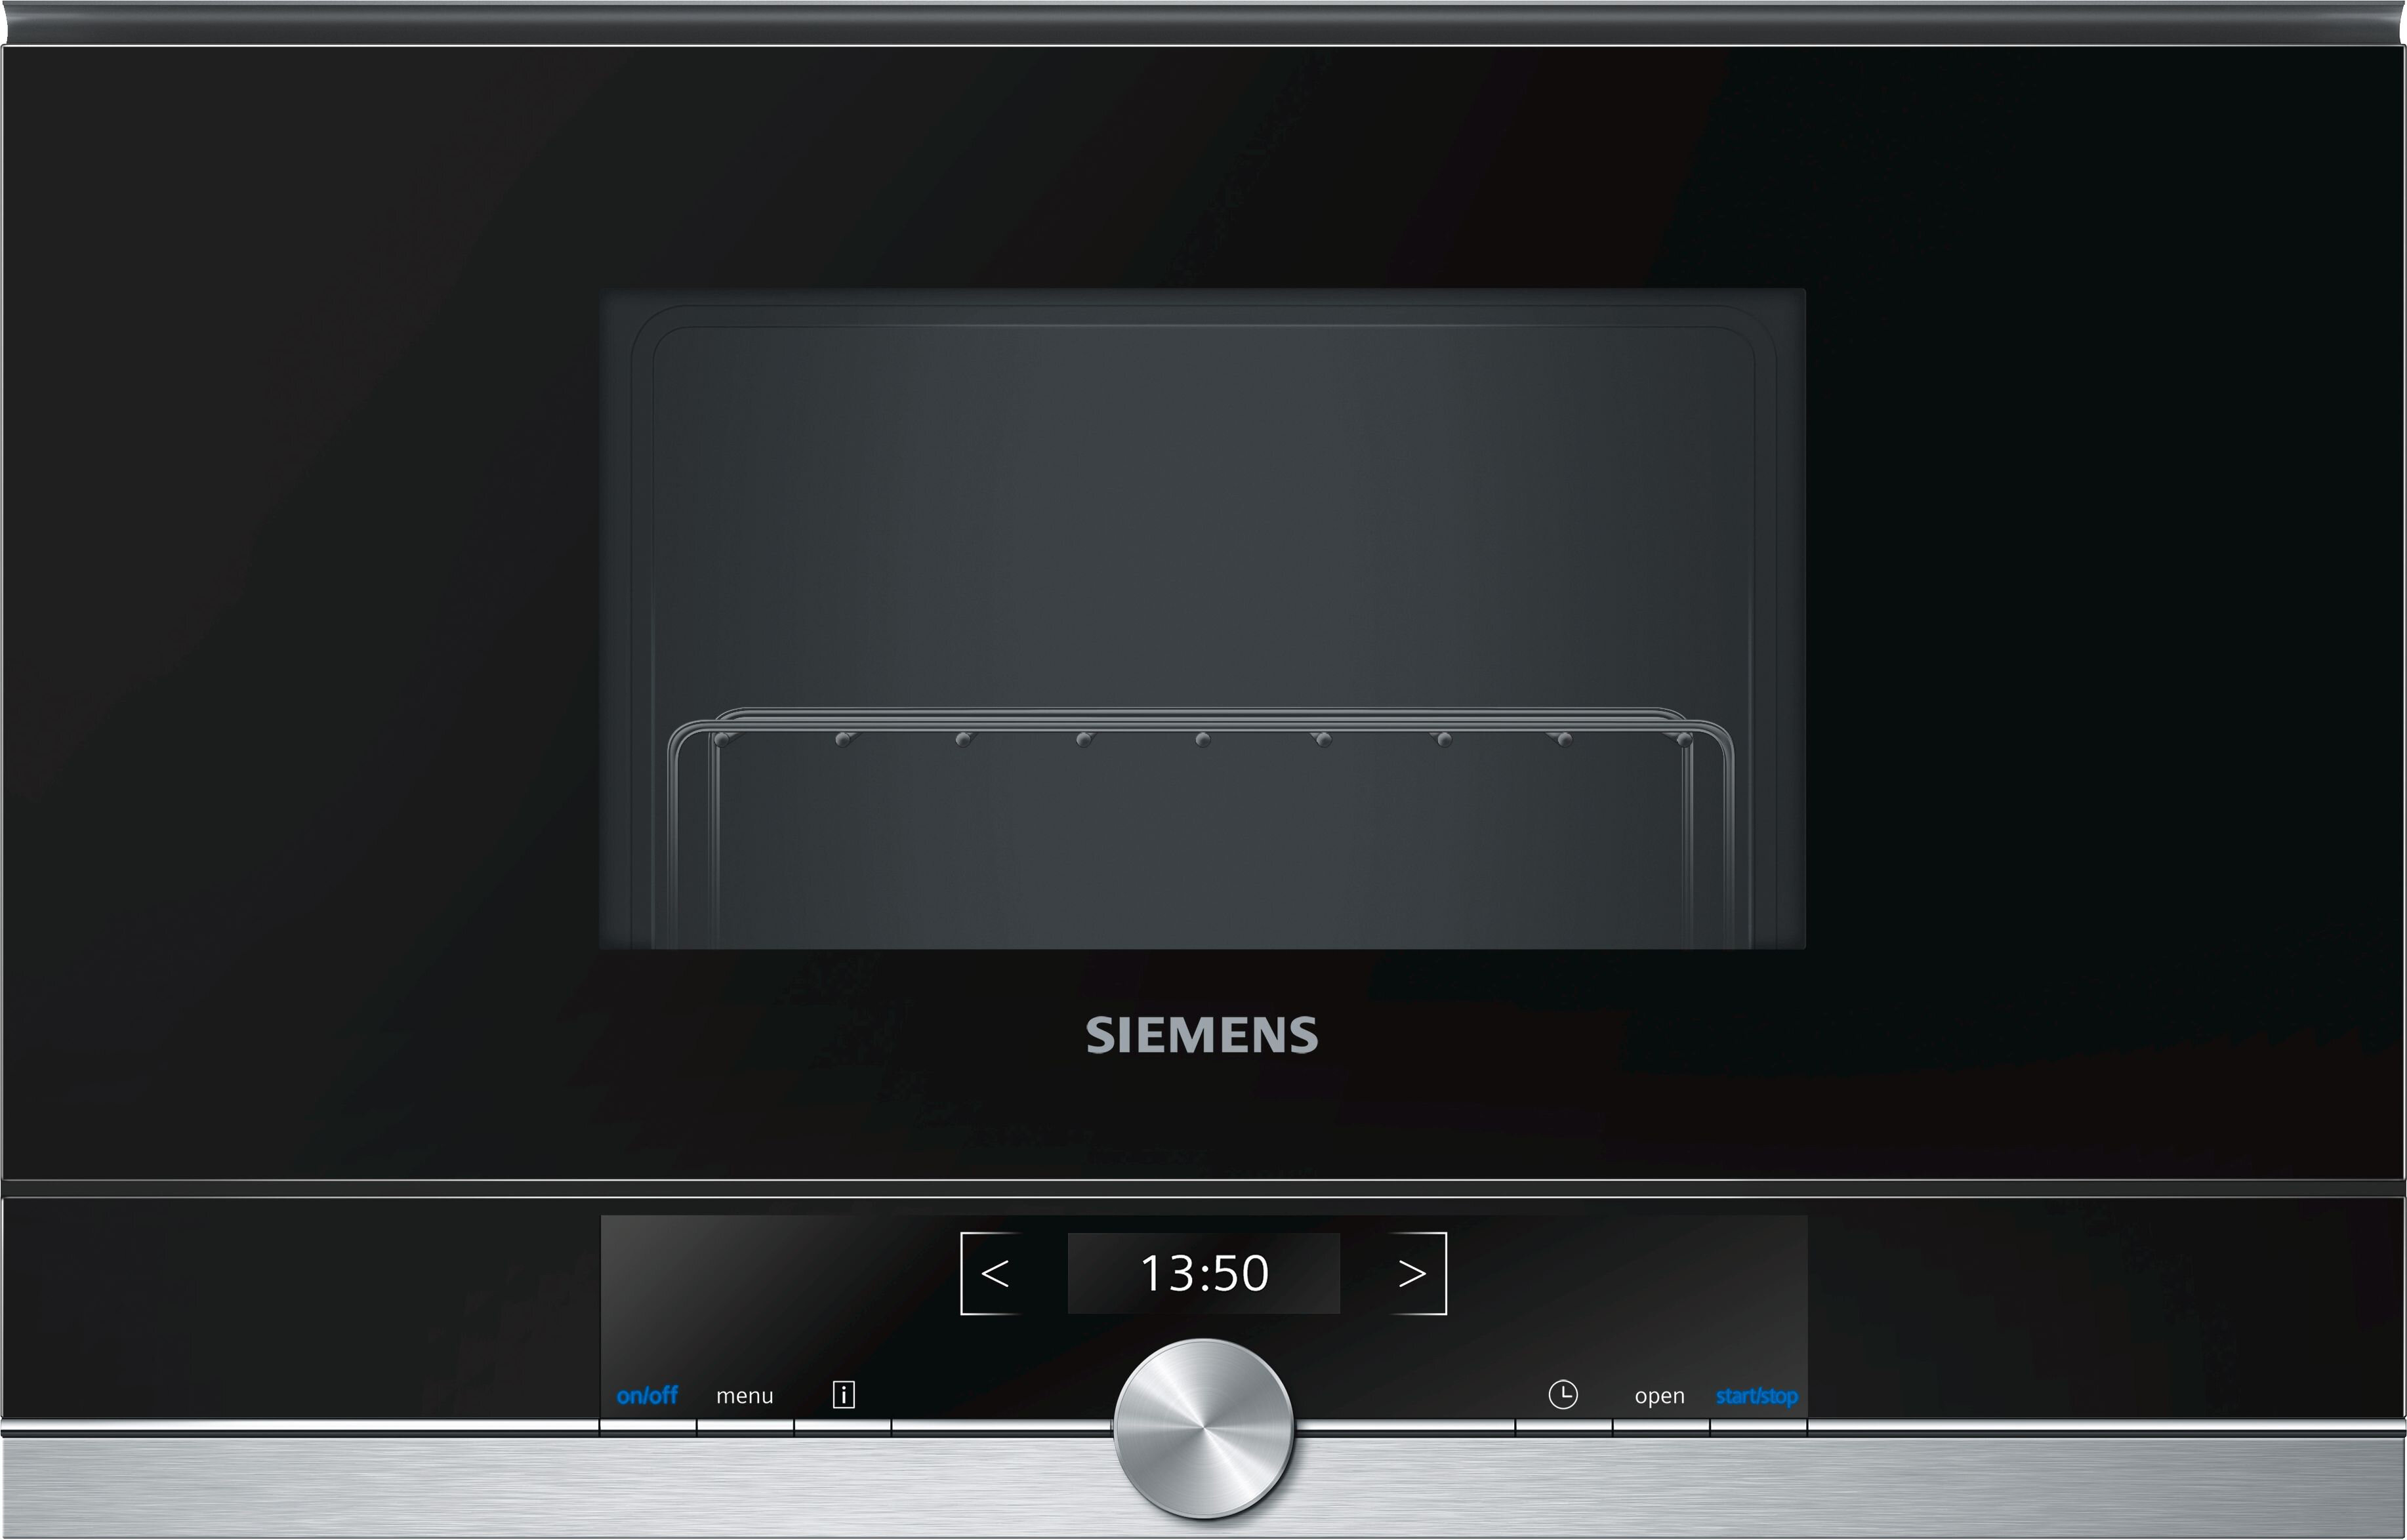 Siemens Встраиваемые микроволновые печи SIEMENS/ 900Вт, 5 режимов, гриль 1300Вт, 21 л, петли слева, черный/сталь